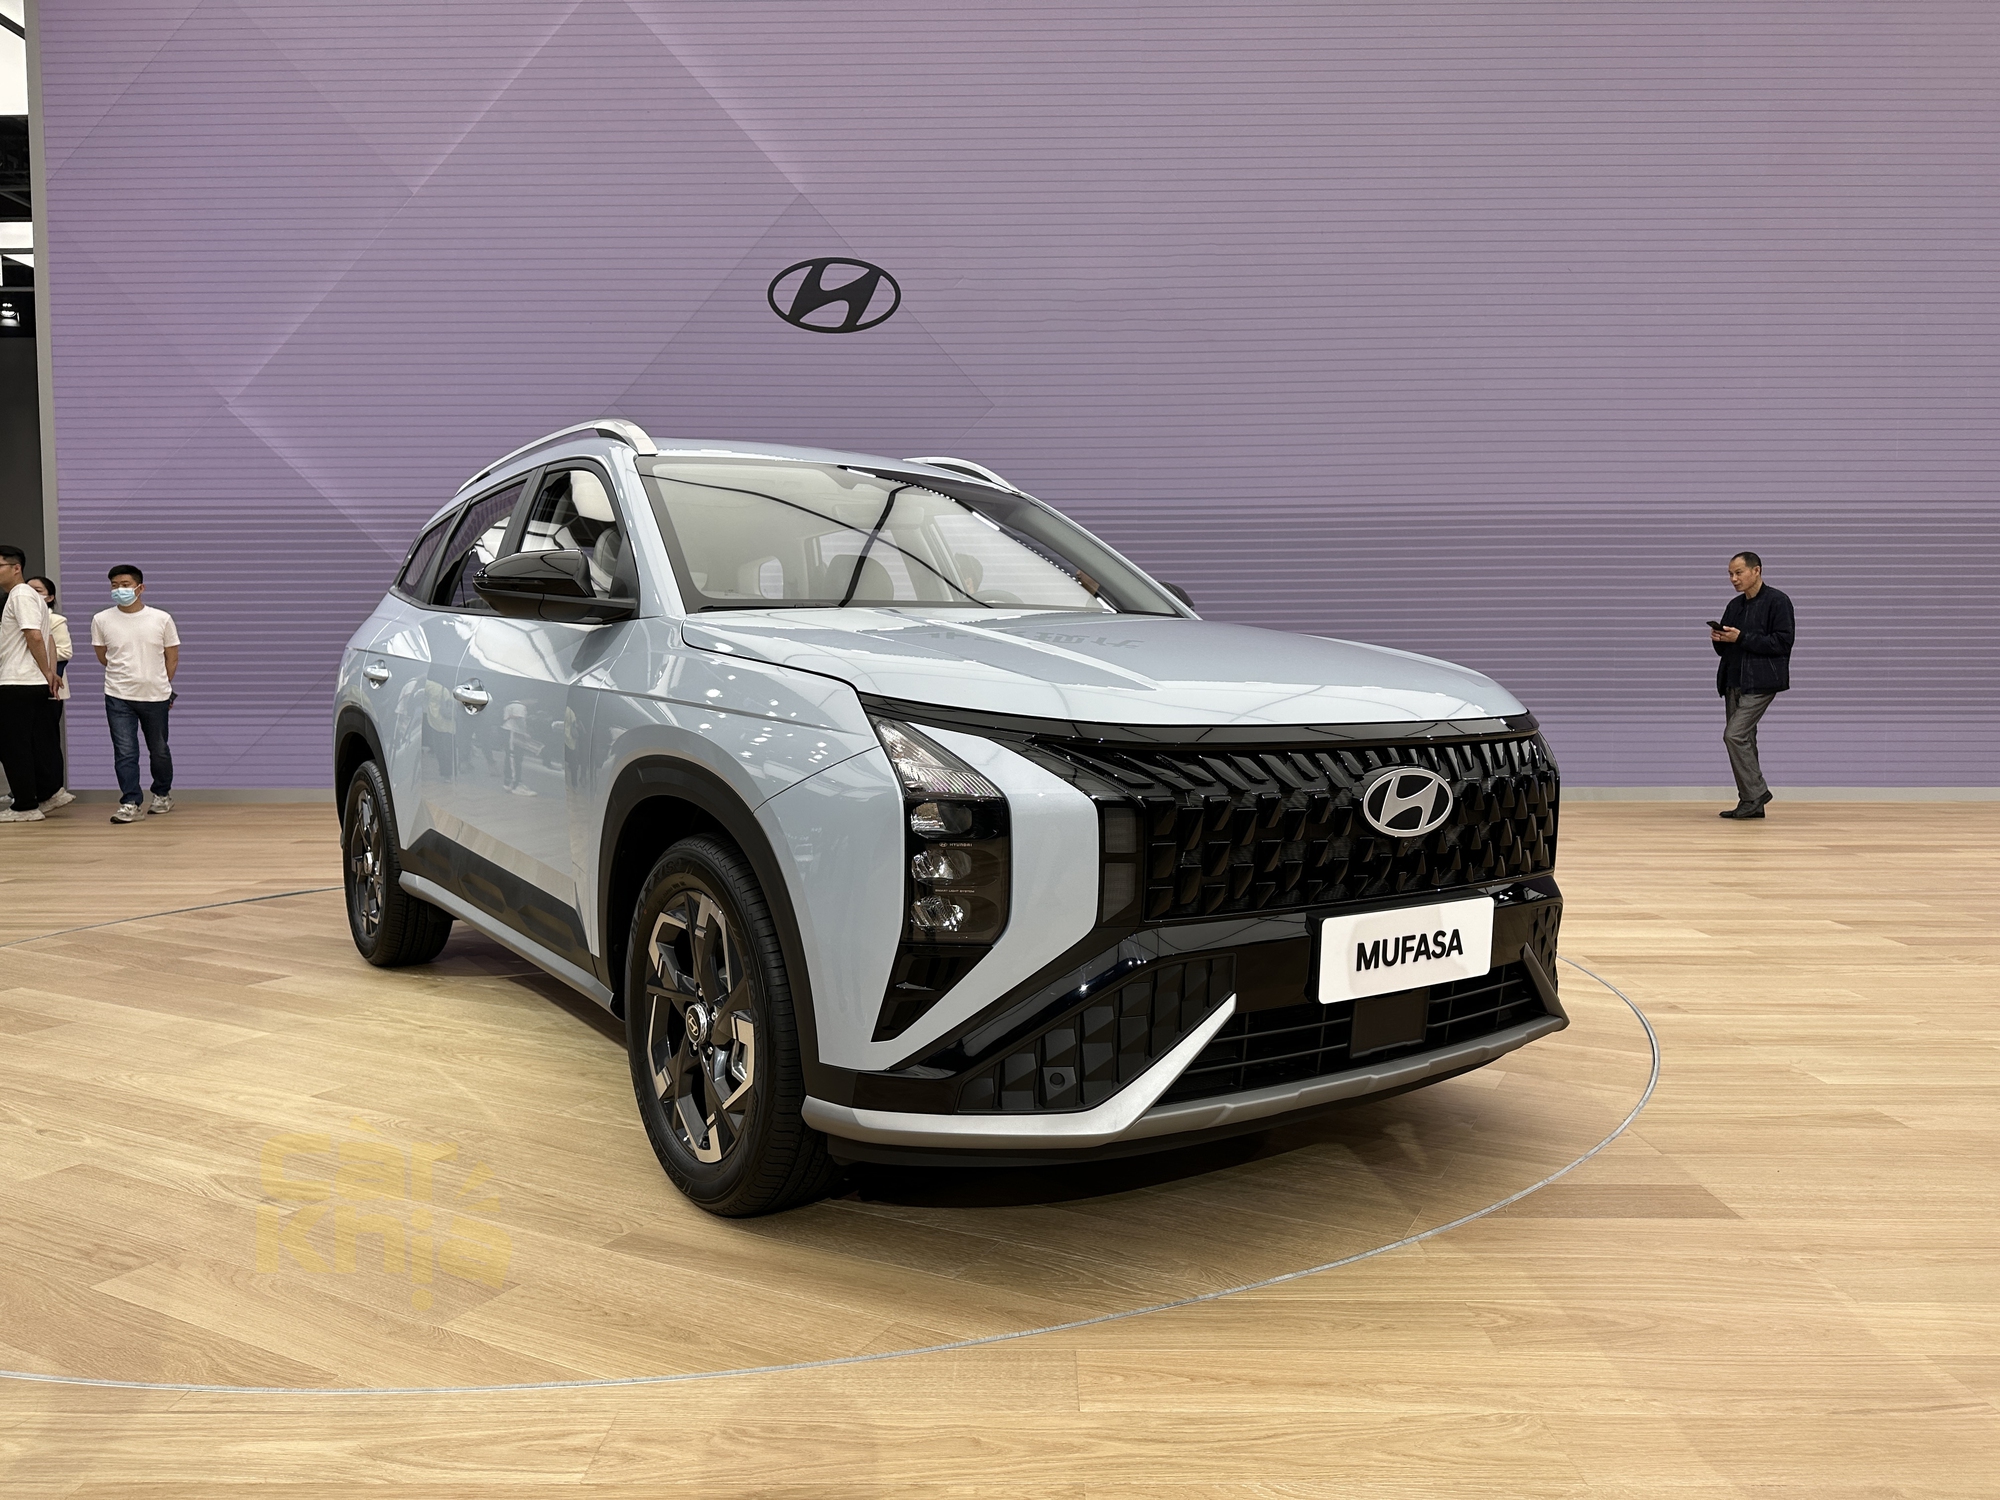 Hyundai Mufasa chính thức ra mắt: Nội thất khác xa ảnh rò rỉ, học hỏi nhiều từ Tucson và Elantra - Ảnh 2.